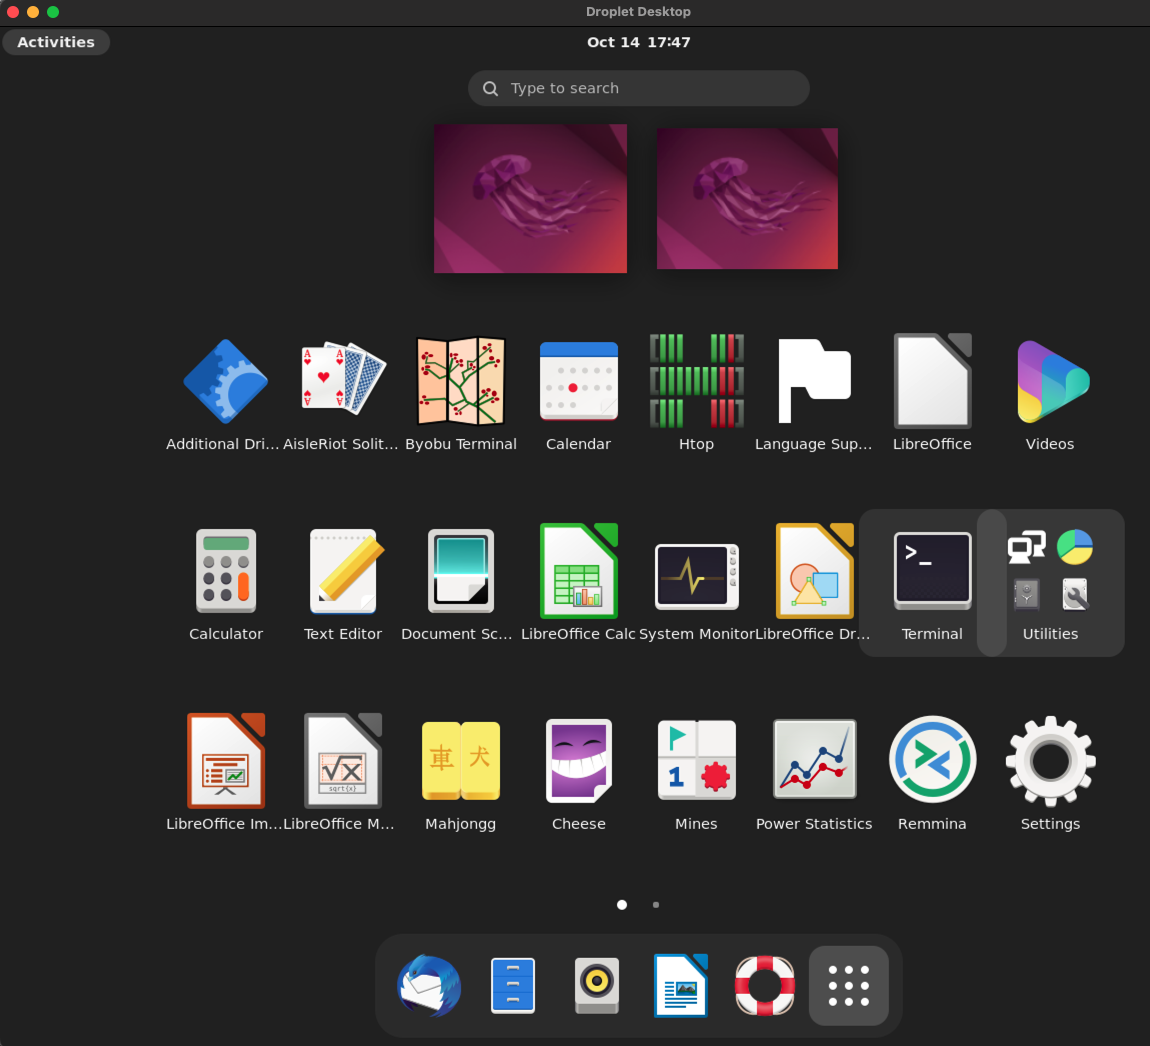 Ubuntu Desktop Activities menu with Terminal highlighted